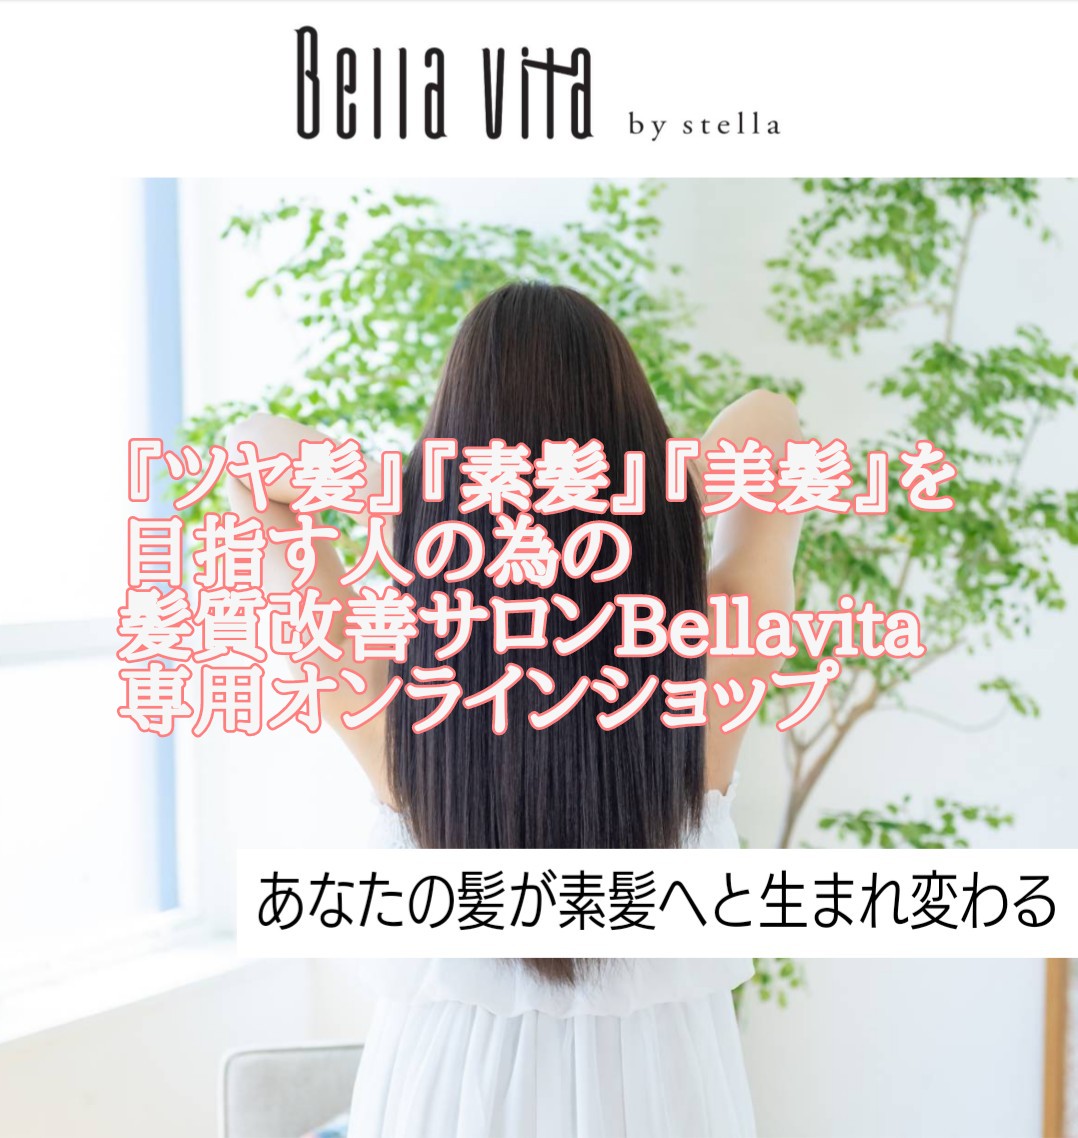 三田市 美容室 Bellavita 髪質改善サロン